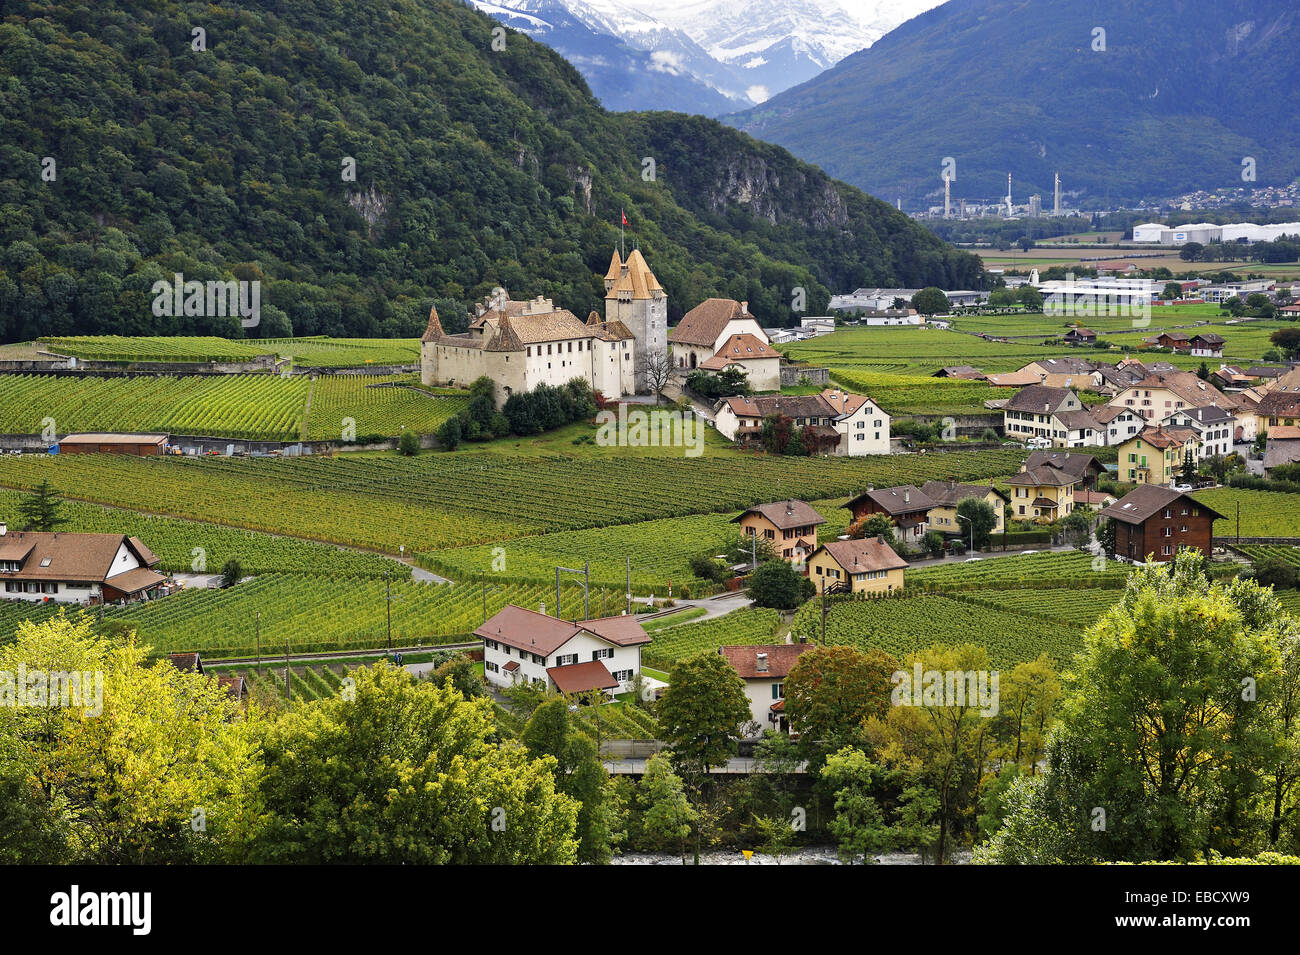 SUISSE SWITZERLAND canton de Vaud AIGLE et dents du midi Carte couleur 